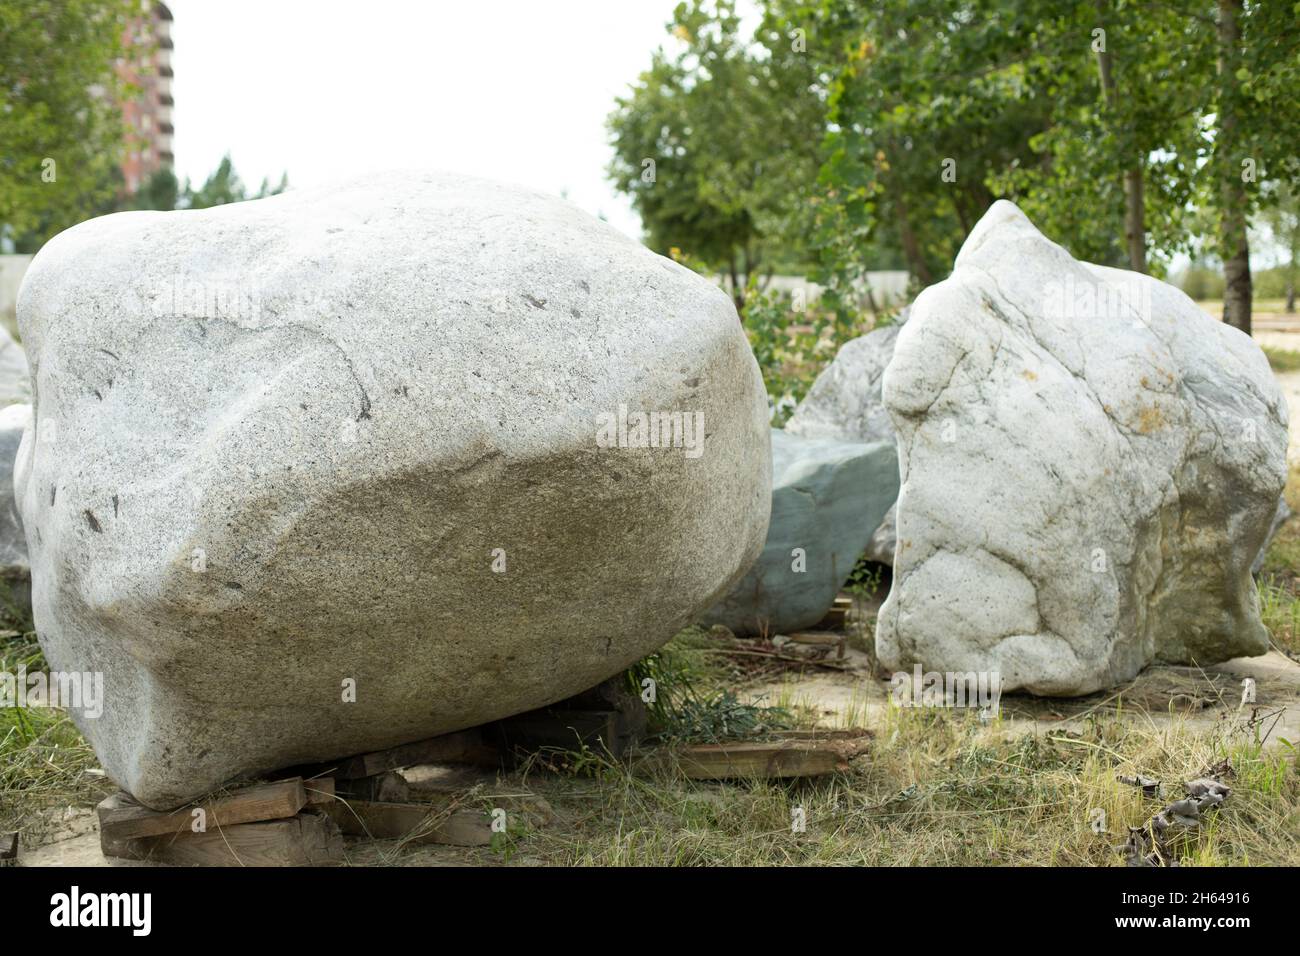 Deux grands blocs gris à proximité dans le parc de la ville.La texture de la pierre, le design décoratif des parcs en Russie.Prise de vue en extérieur.Marche autour Banque D'Images